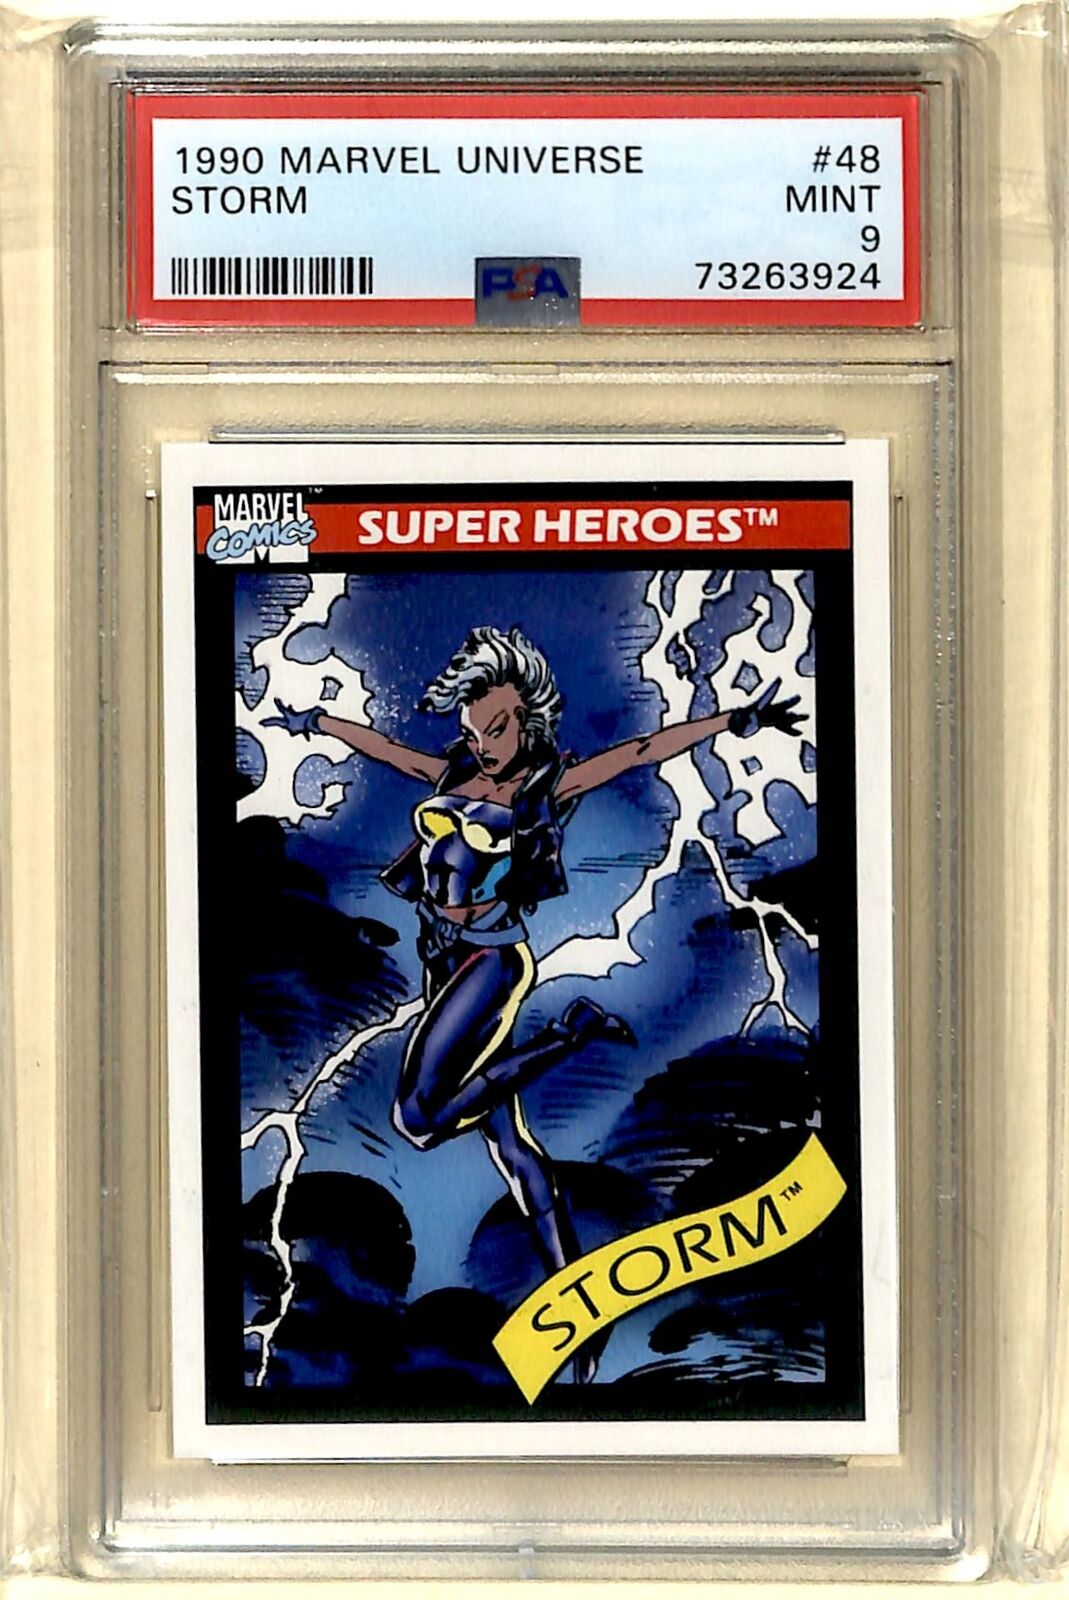 1990 Impel Marvel Universe Super Heroes Storm PSA 9 #48